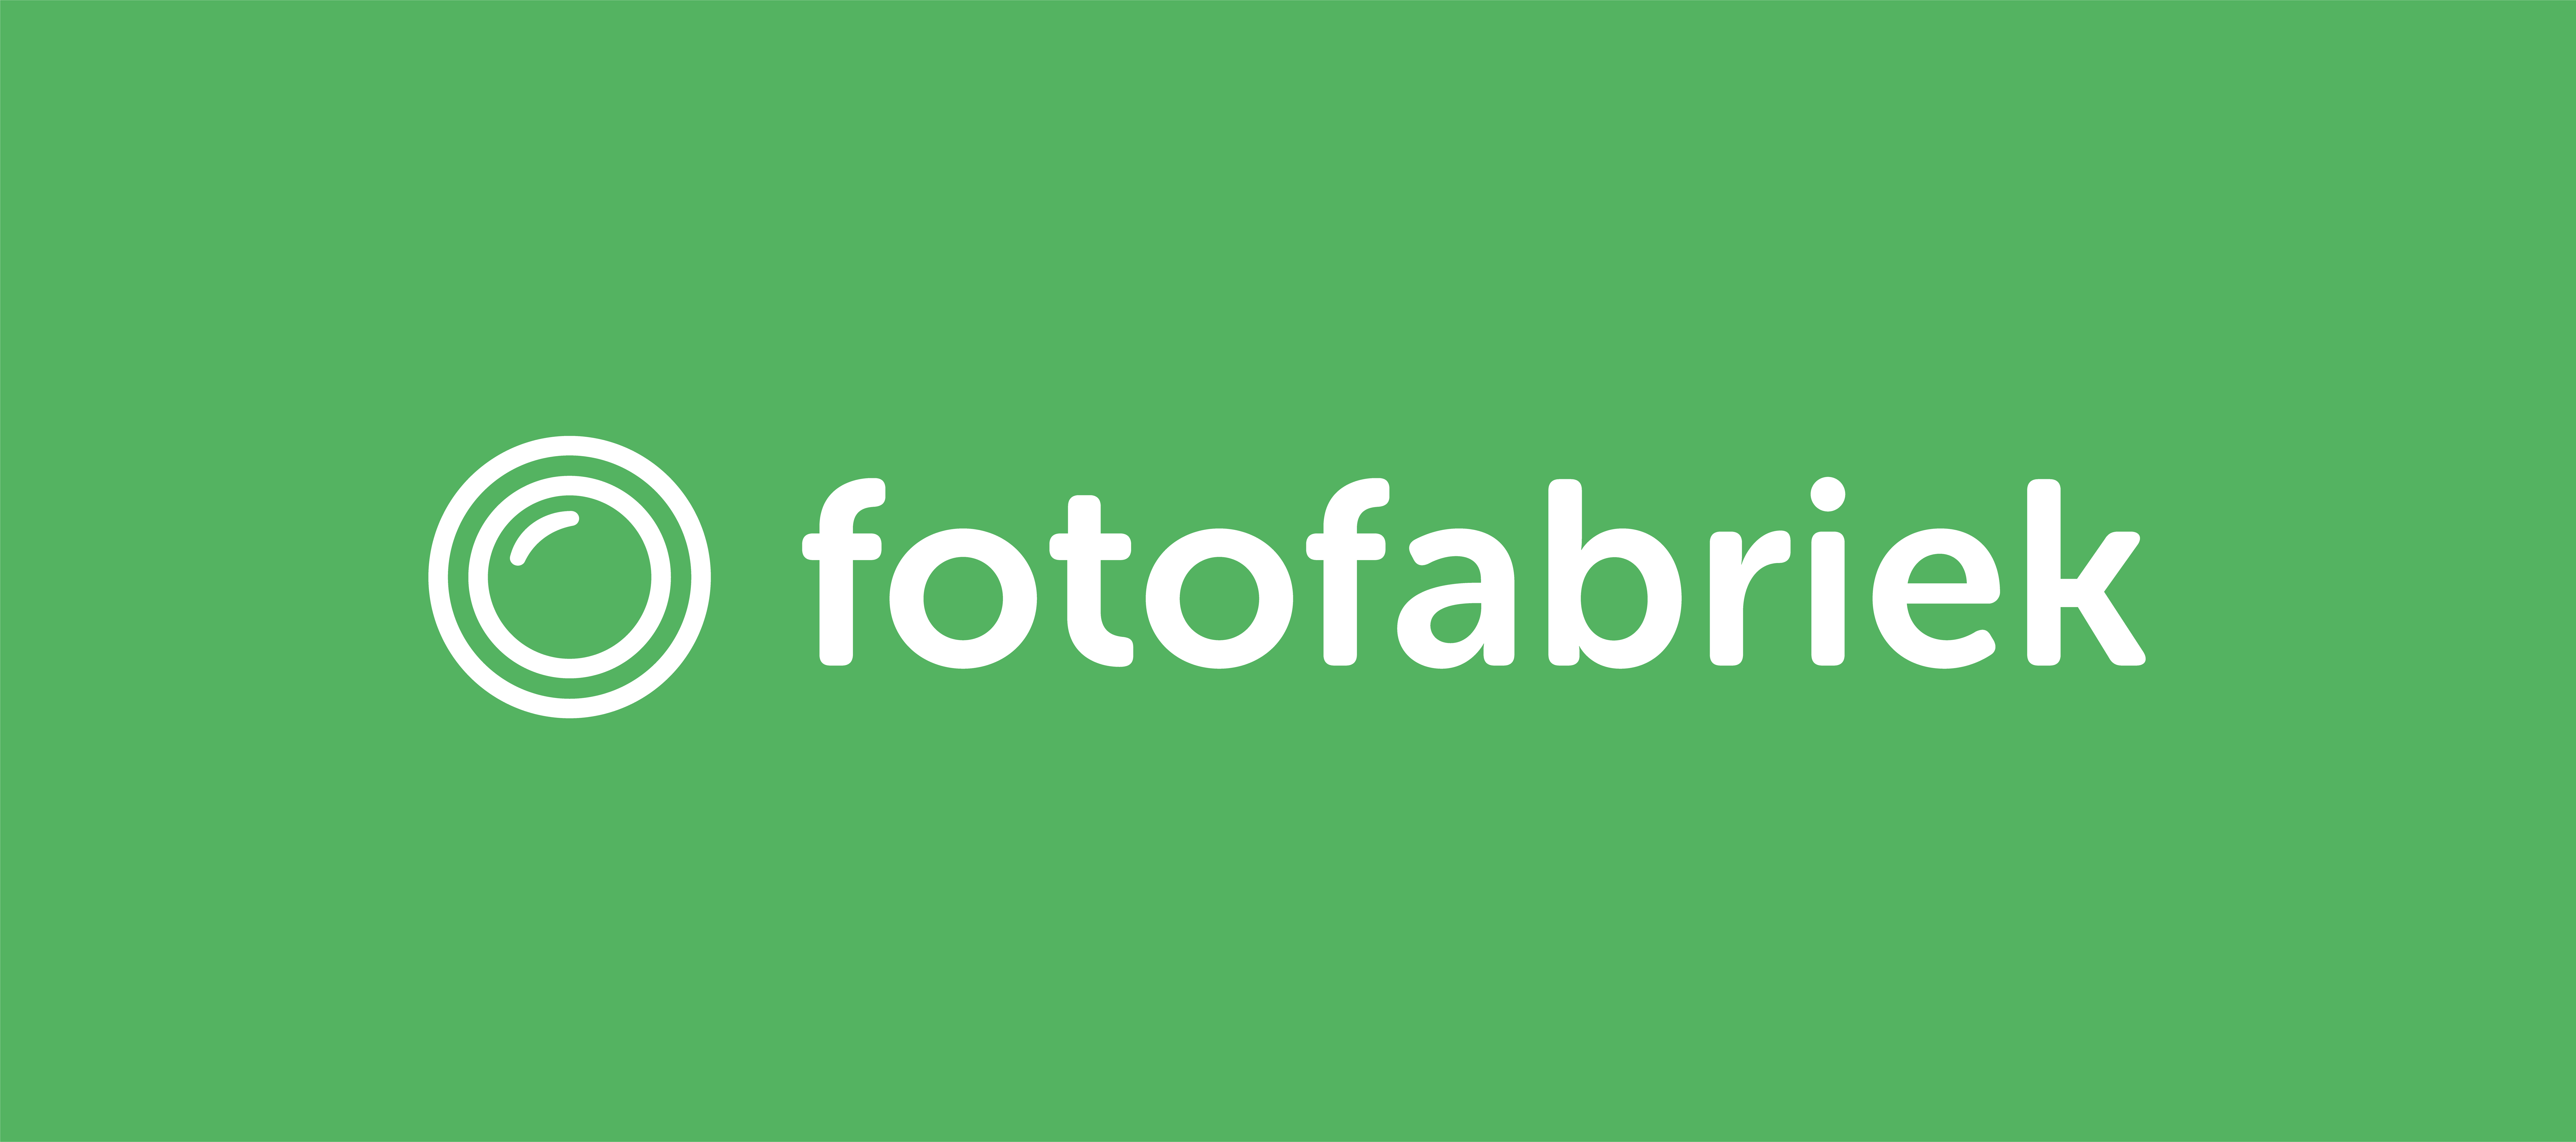 logo fotofabriek